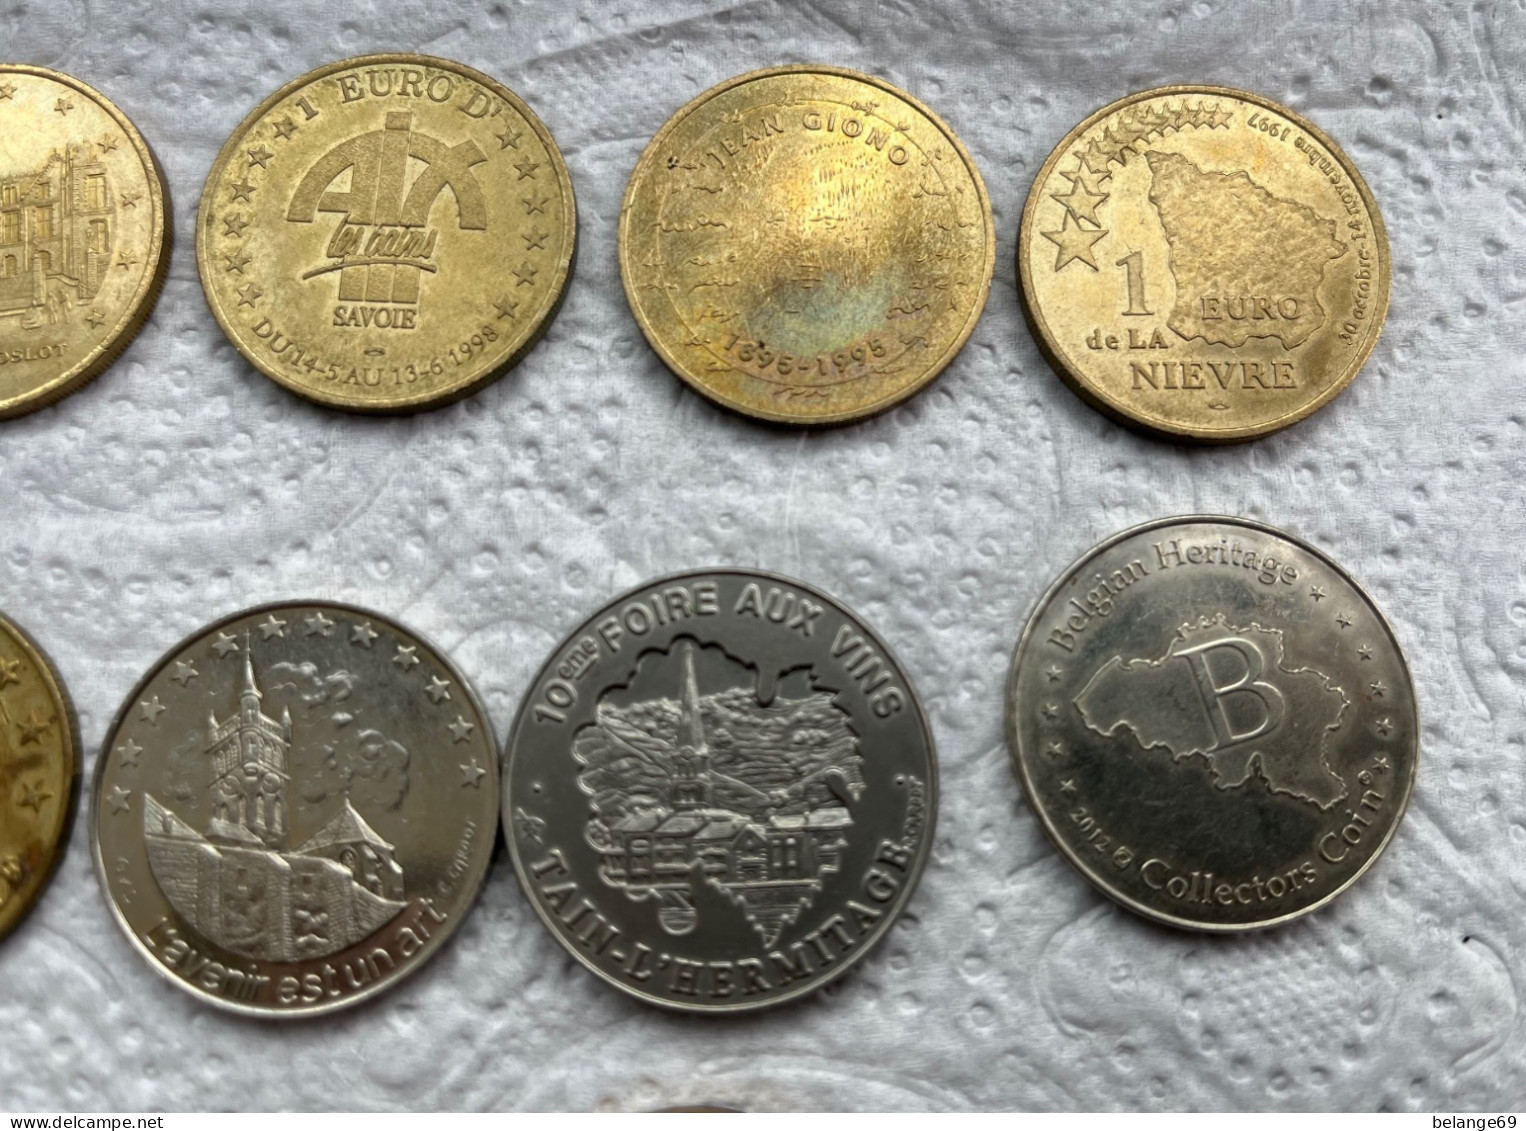 Beau Lot de 13 Monnaies - Euro / Ecu des Villes - 1998 - Rare et Sans Double !